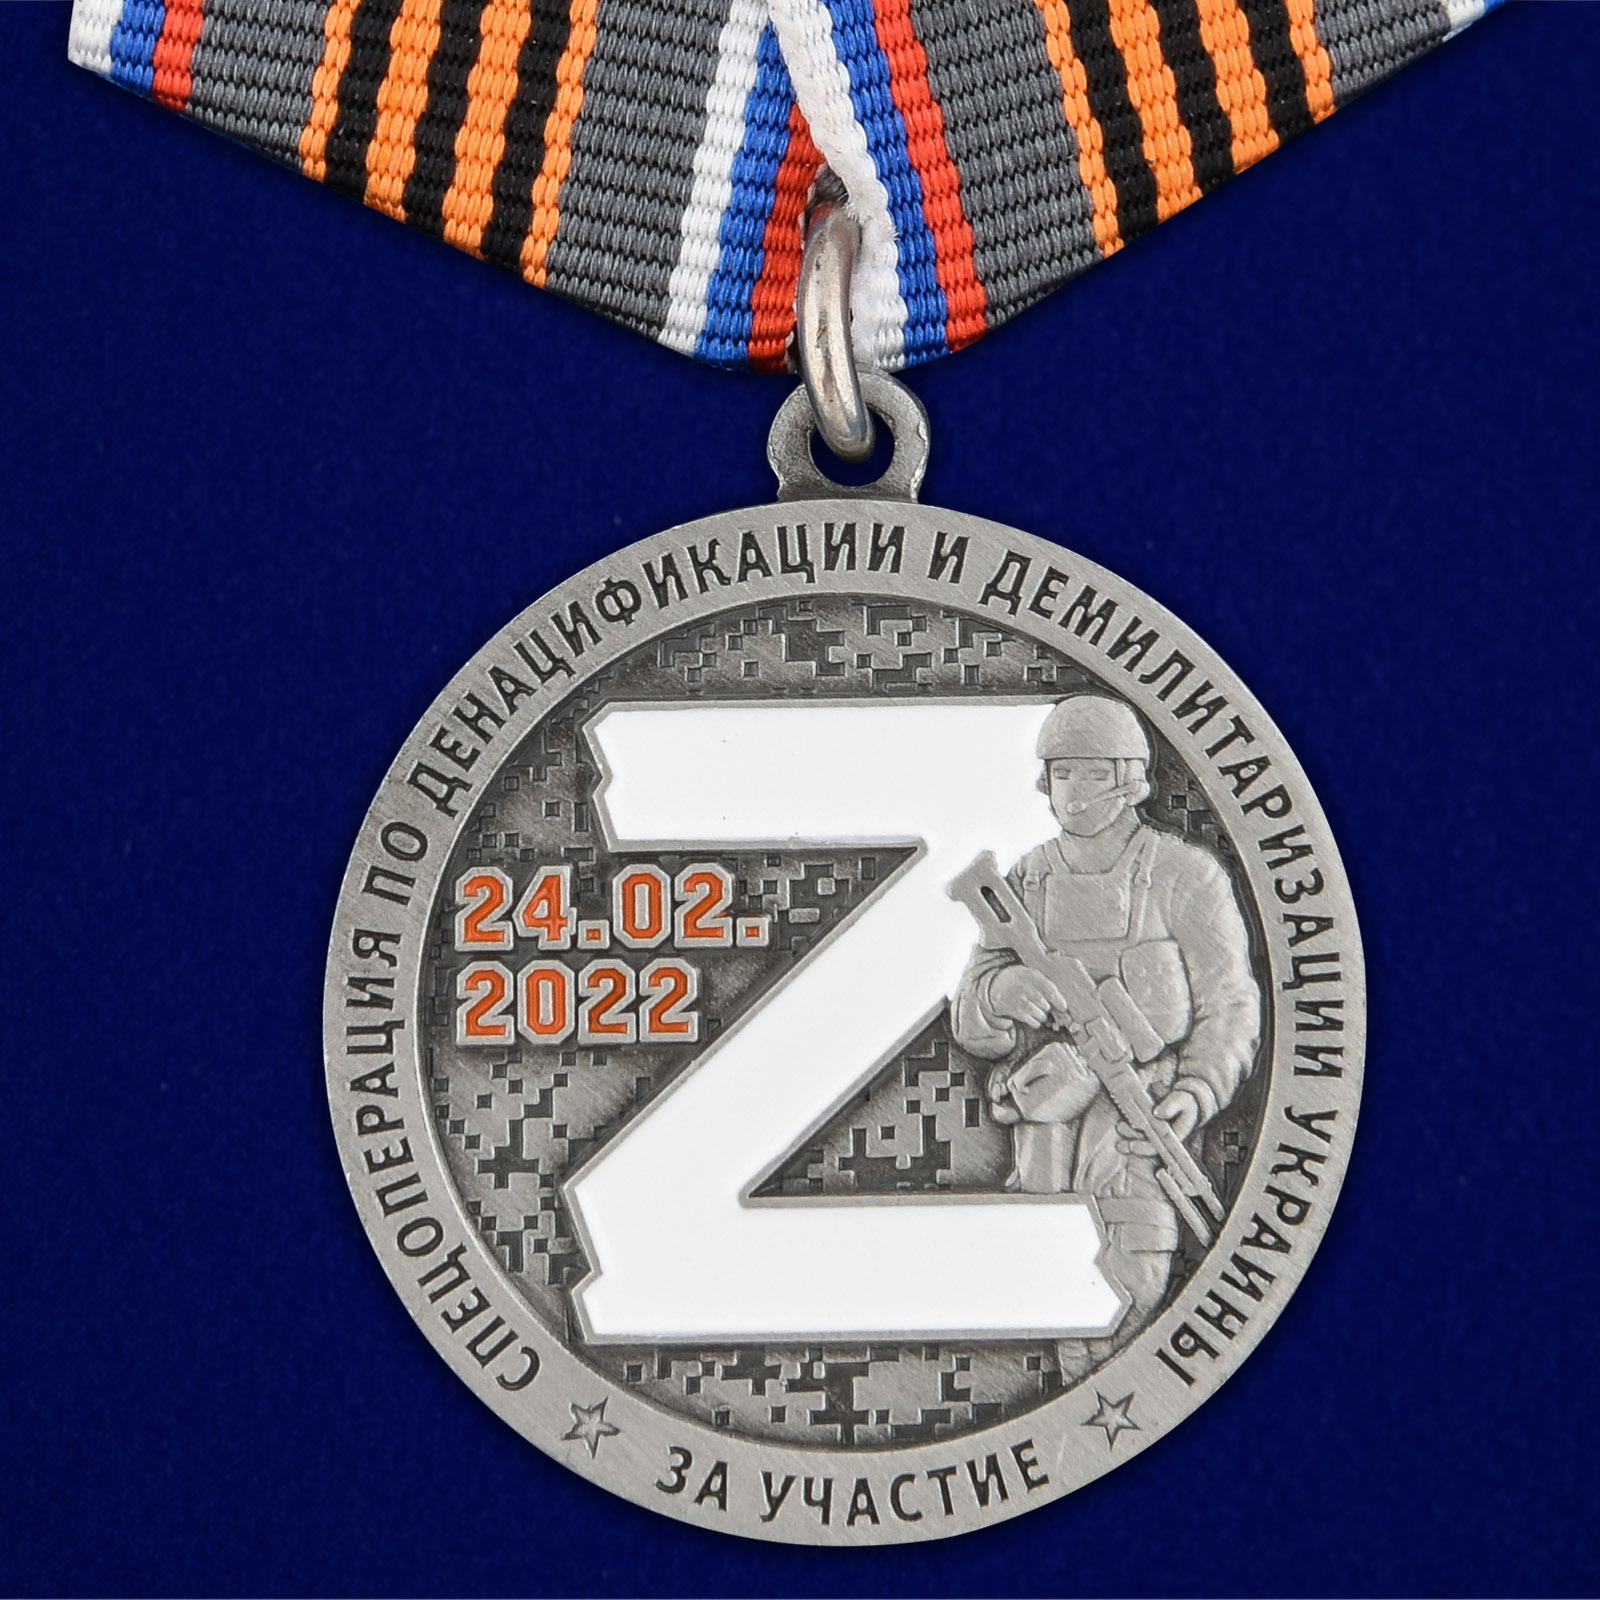 Купить медаль За участие в операции Z онлайн